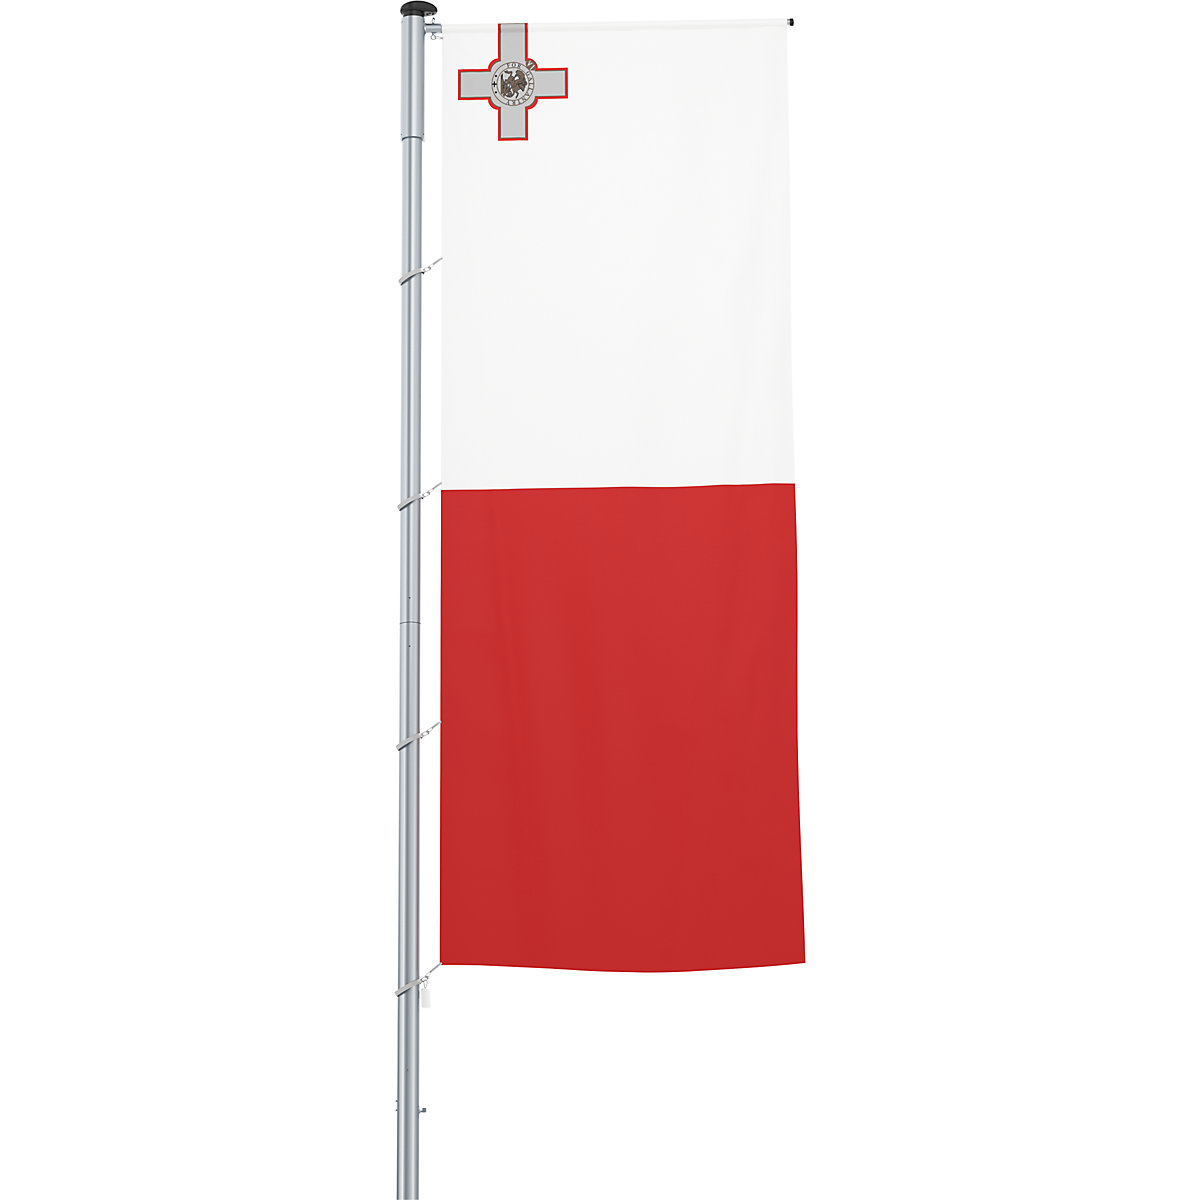 Vlajka na pozdĺžne upevnenie na stožiar/národná vlajka – Mannus, formát 1,2 x 3 m, Malta-6